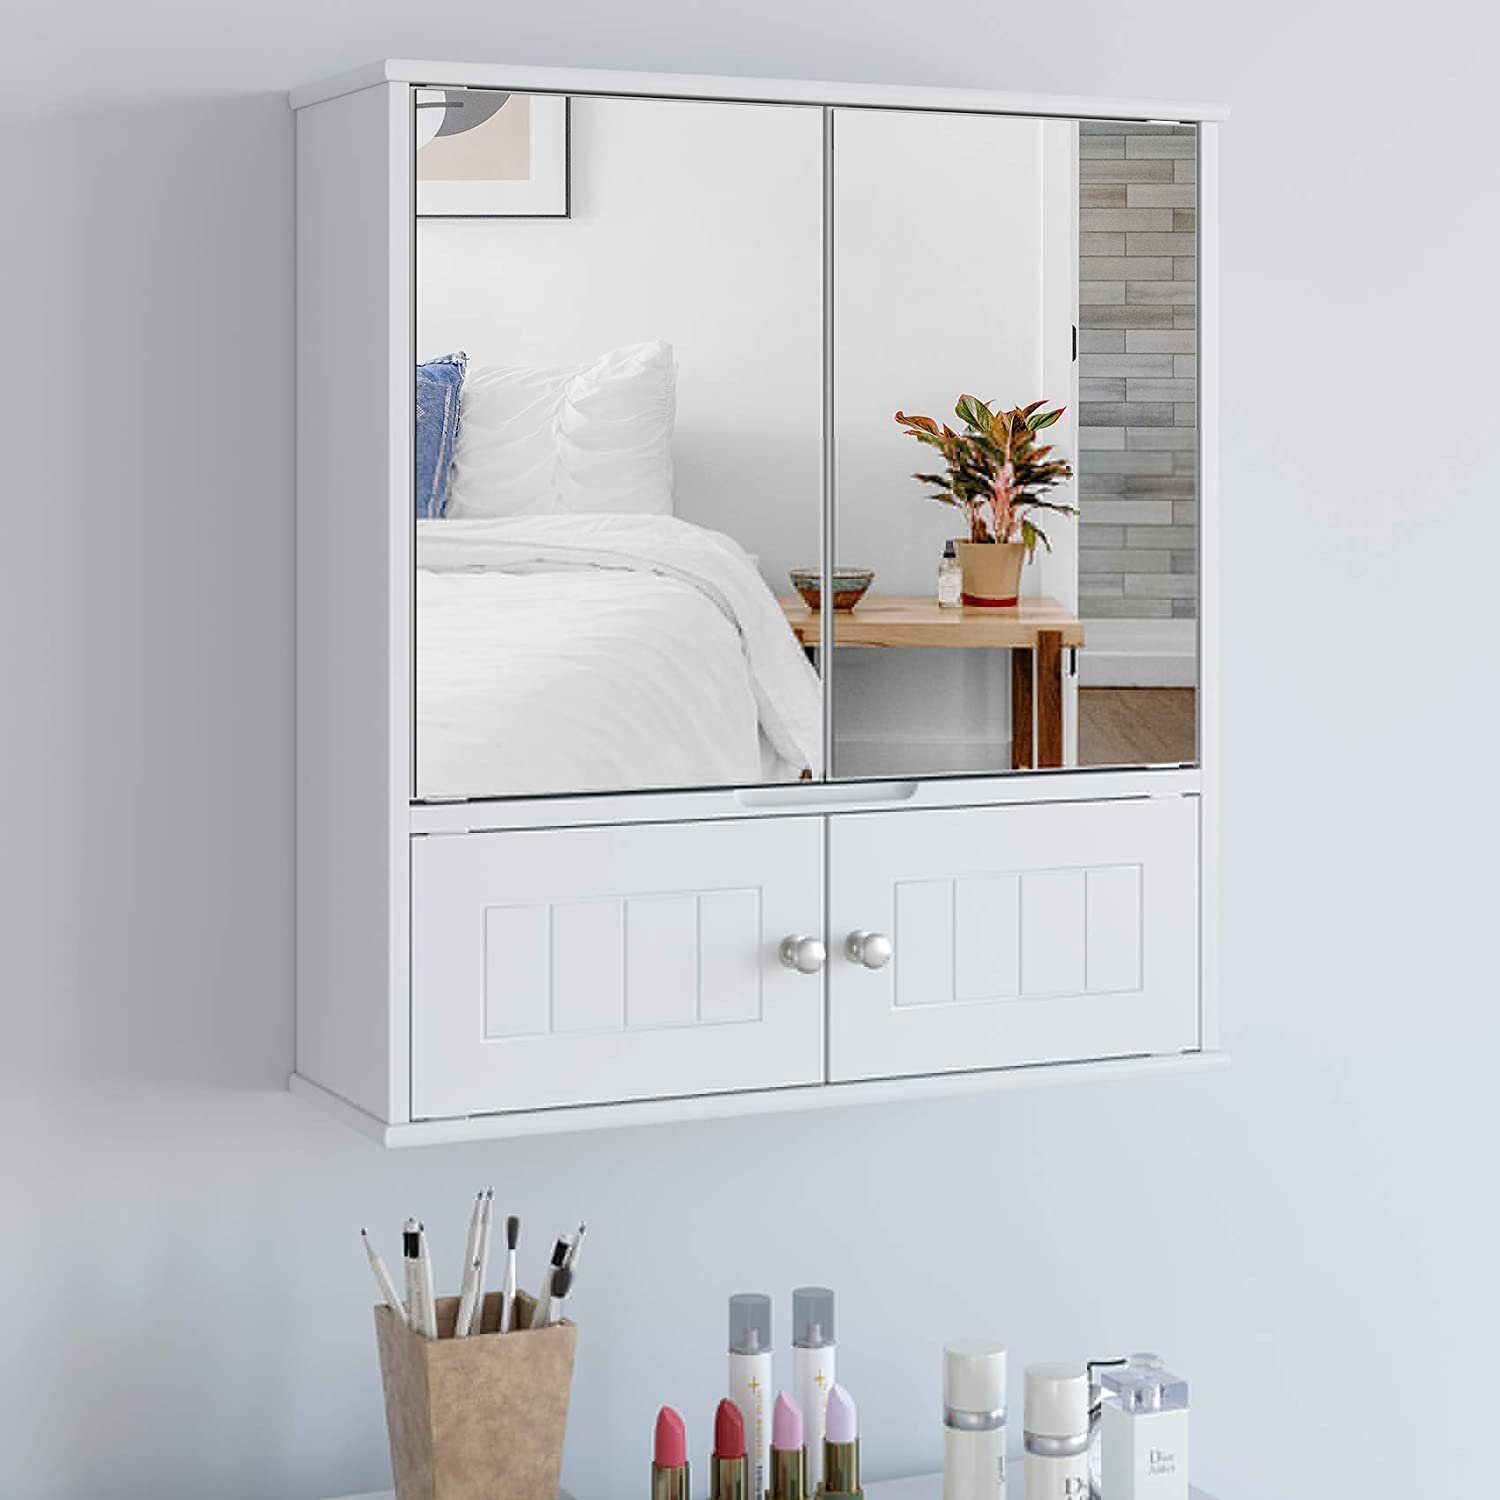 Badezimmerspiegelschrank mit Hängeschrank Ablage HOMECHO Weiß Badschrank